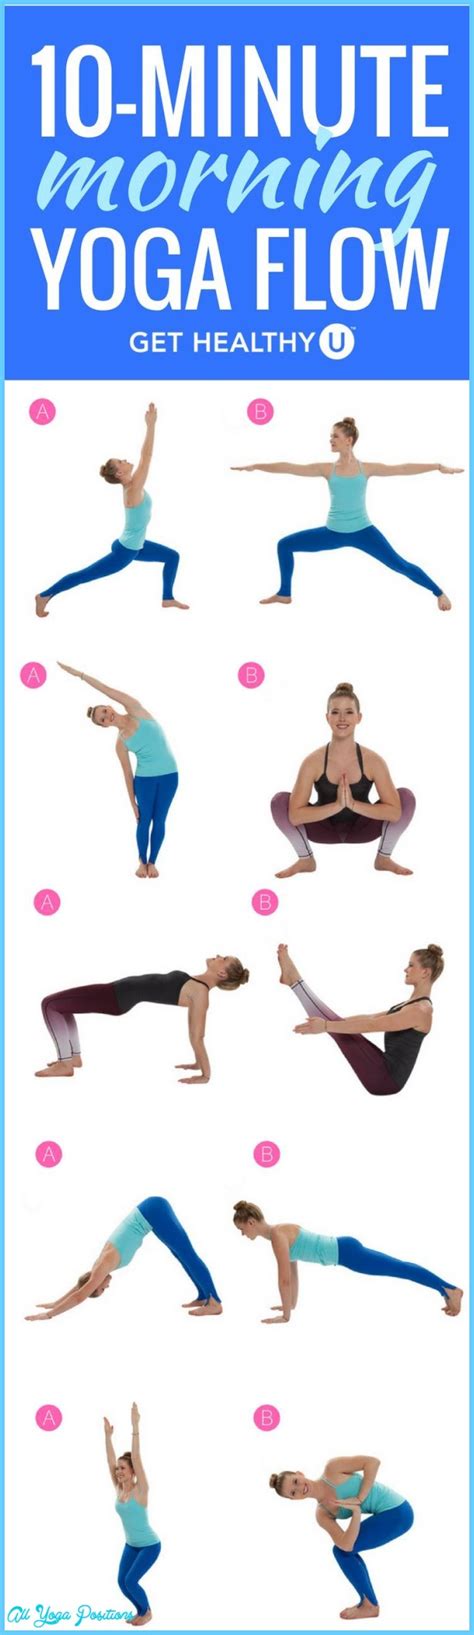 10 Basic Yoga Poses